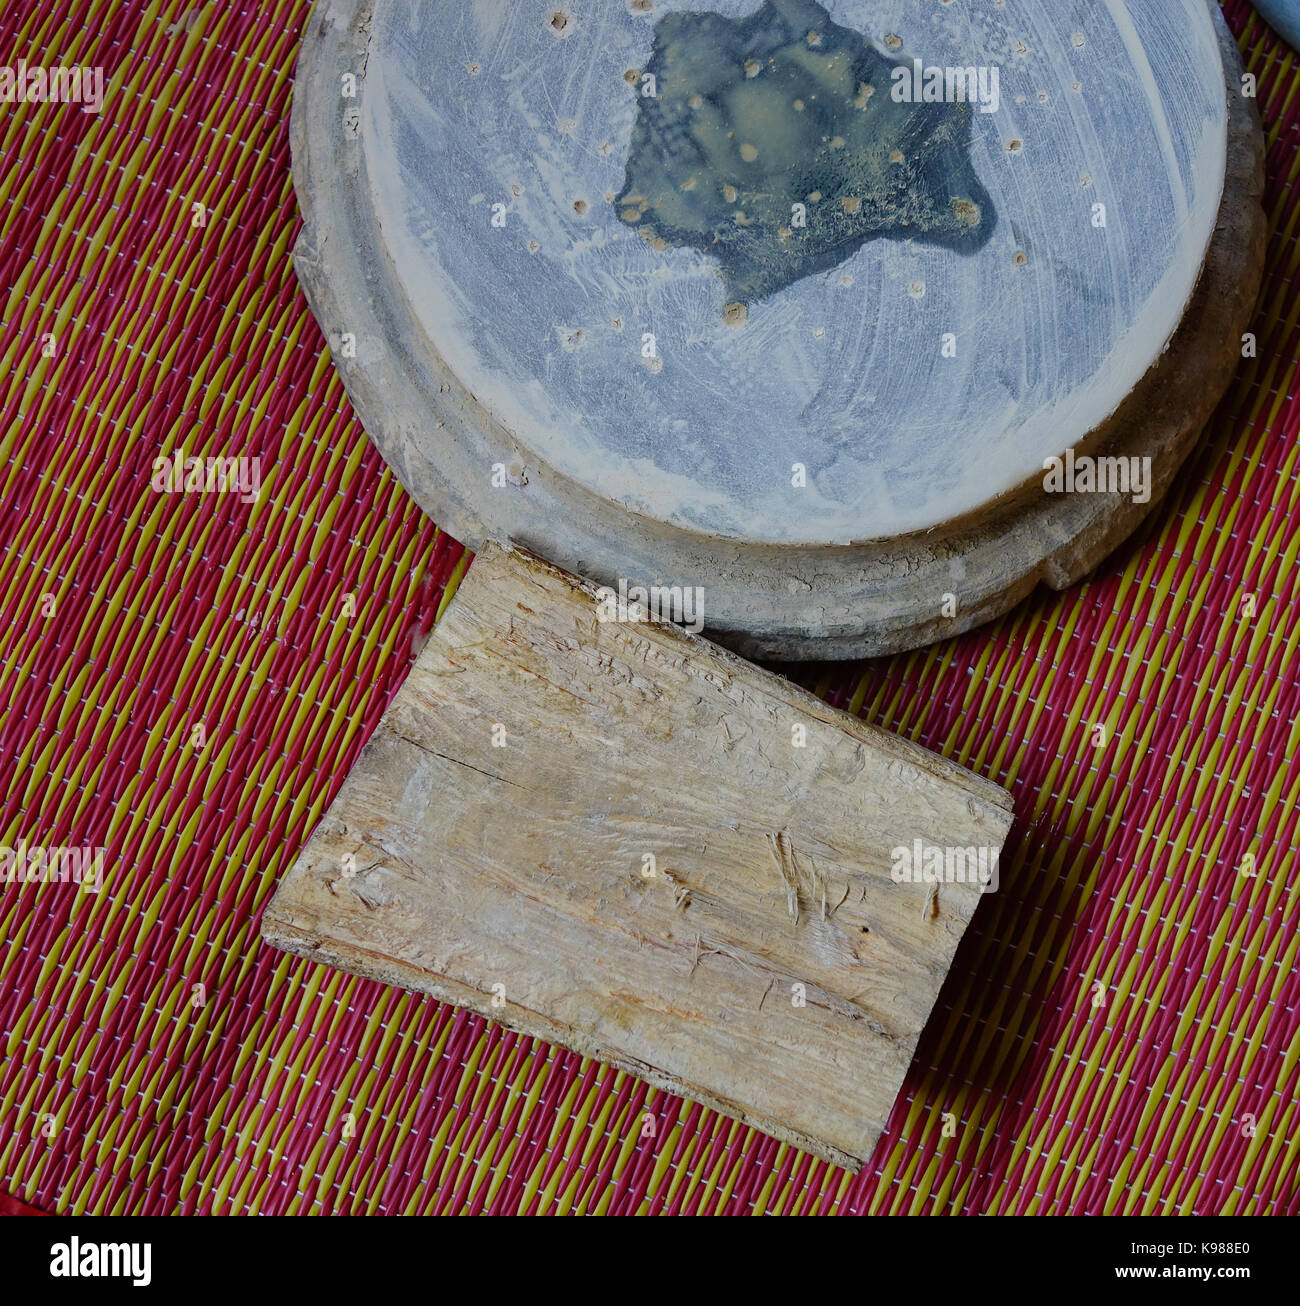 Thanaka wood and Kyauk pyin stone slab. Tanaka is Burmese tradition cosmetic made from bark of tanaka tree. Stock Photo